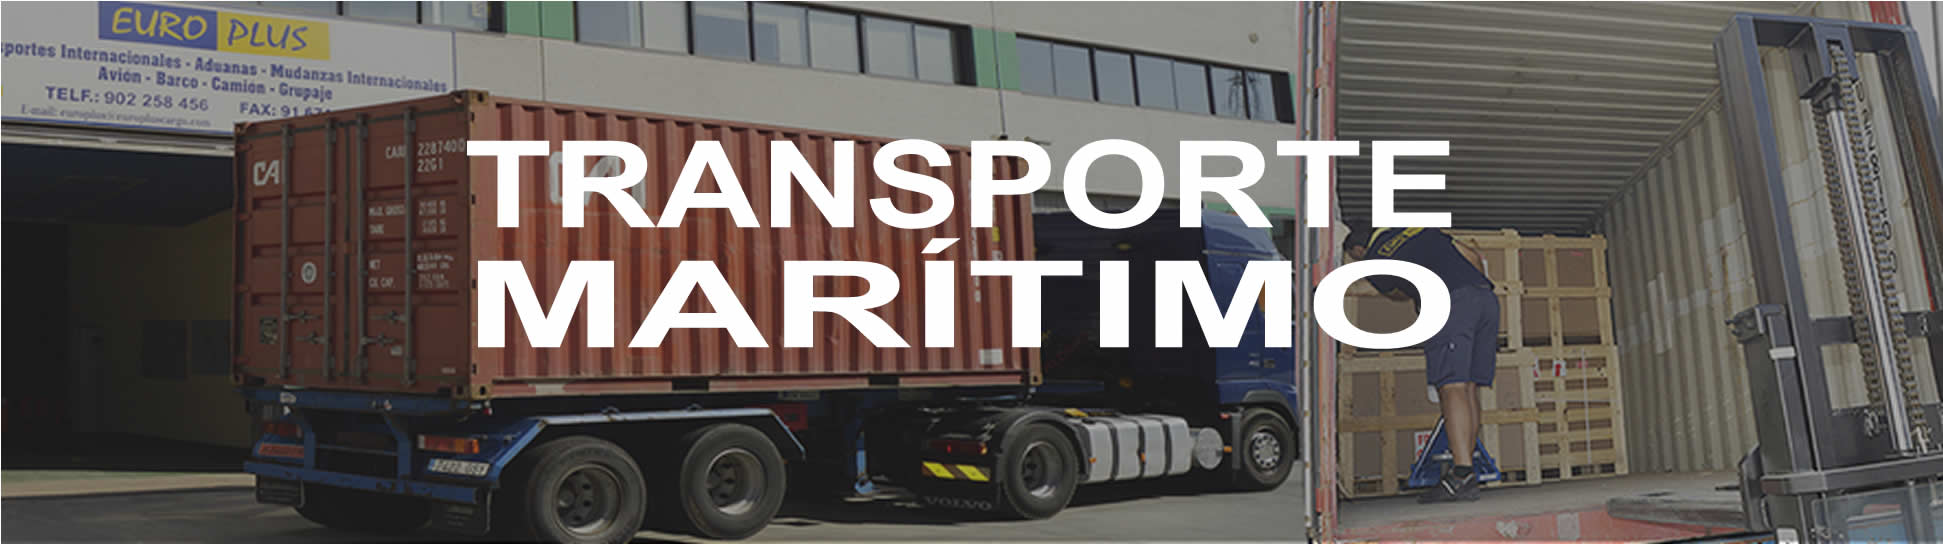 Transporte marítimo - Arte Plus Cargo